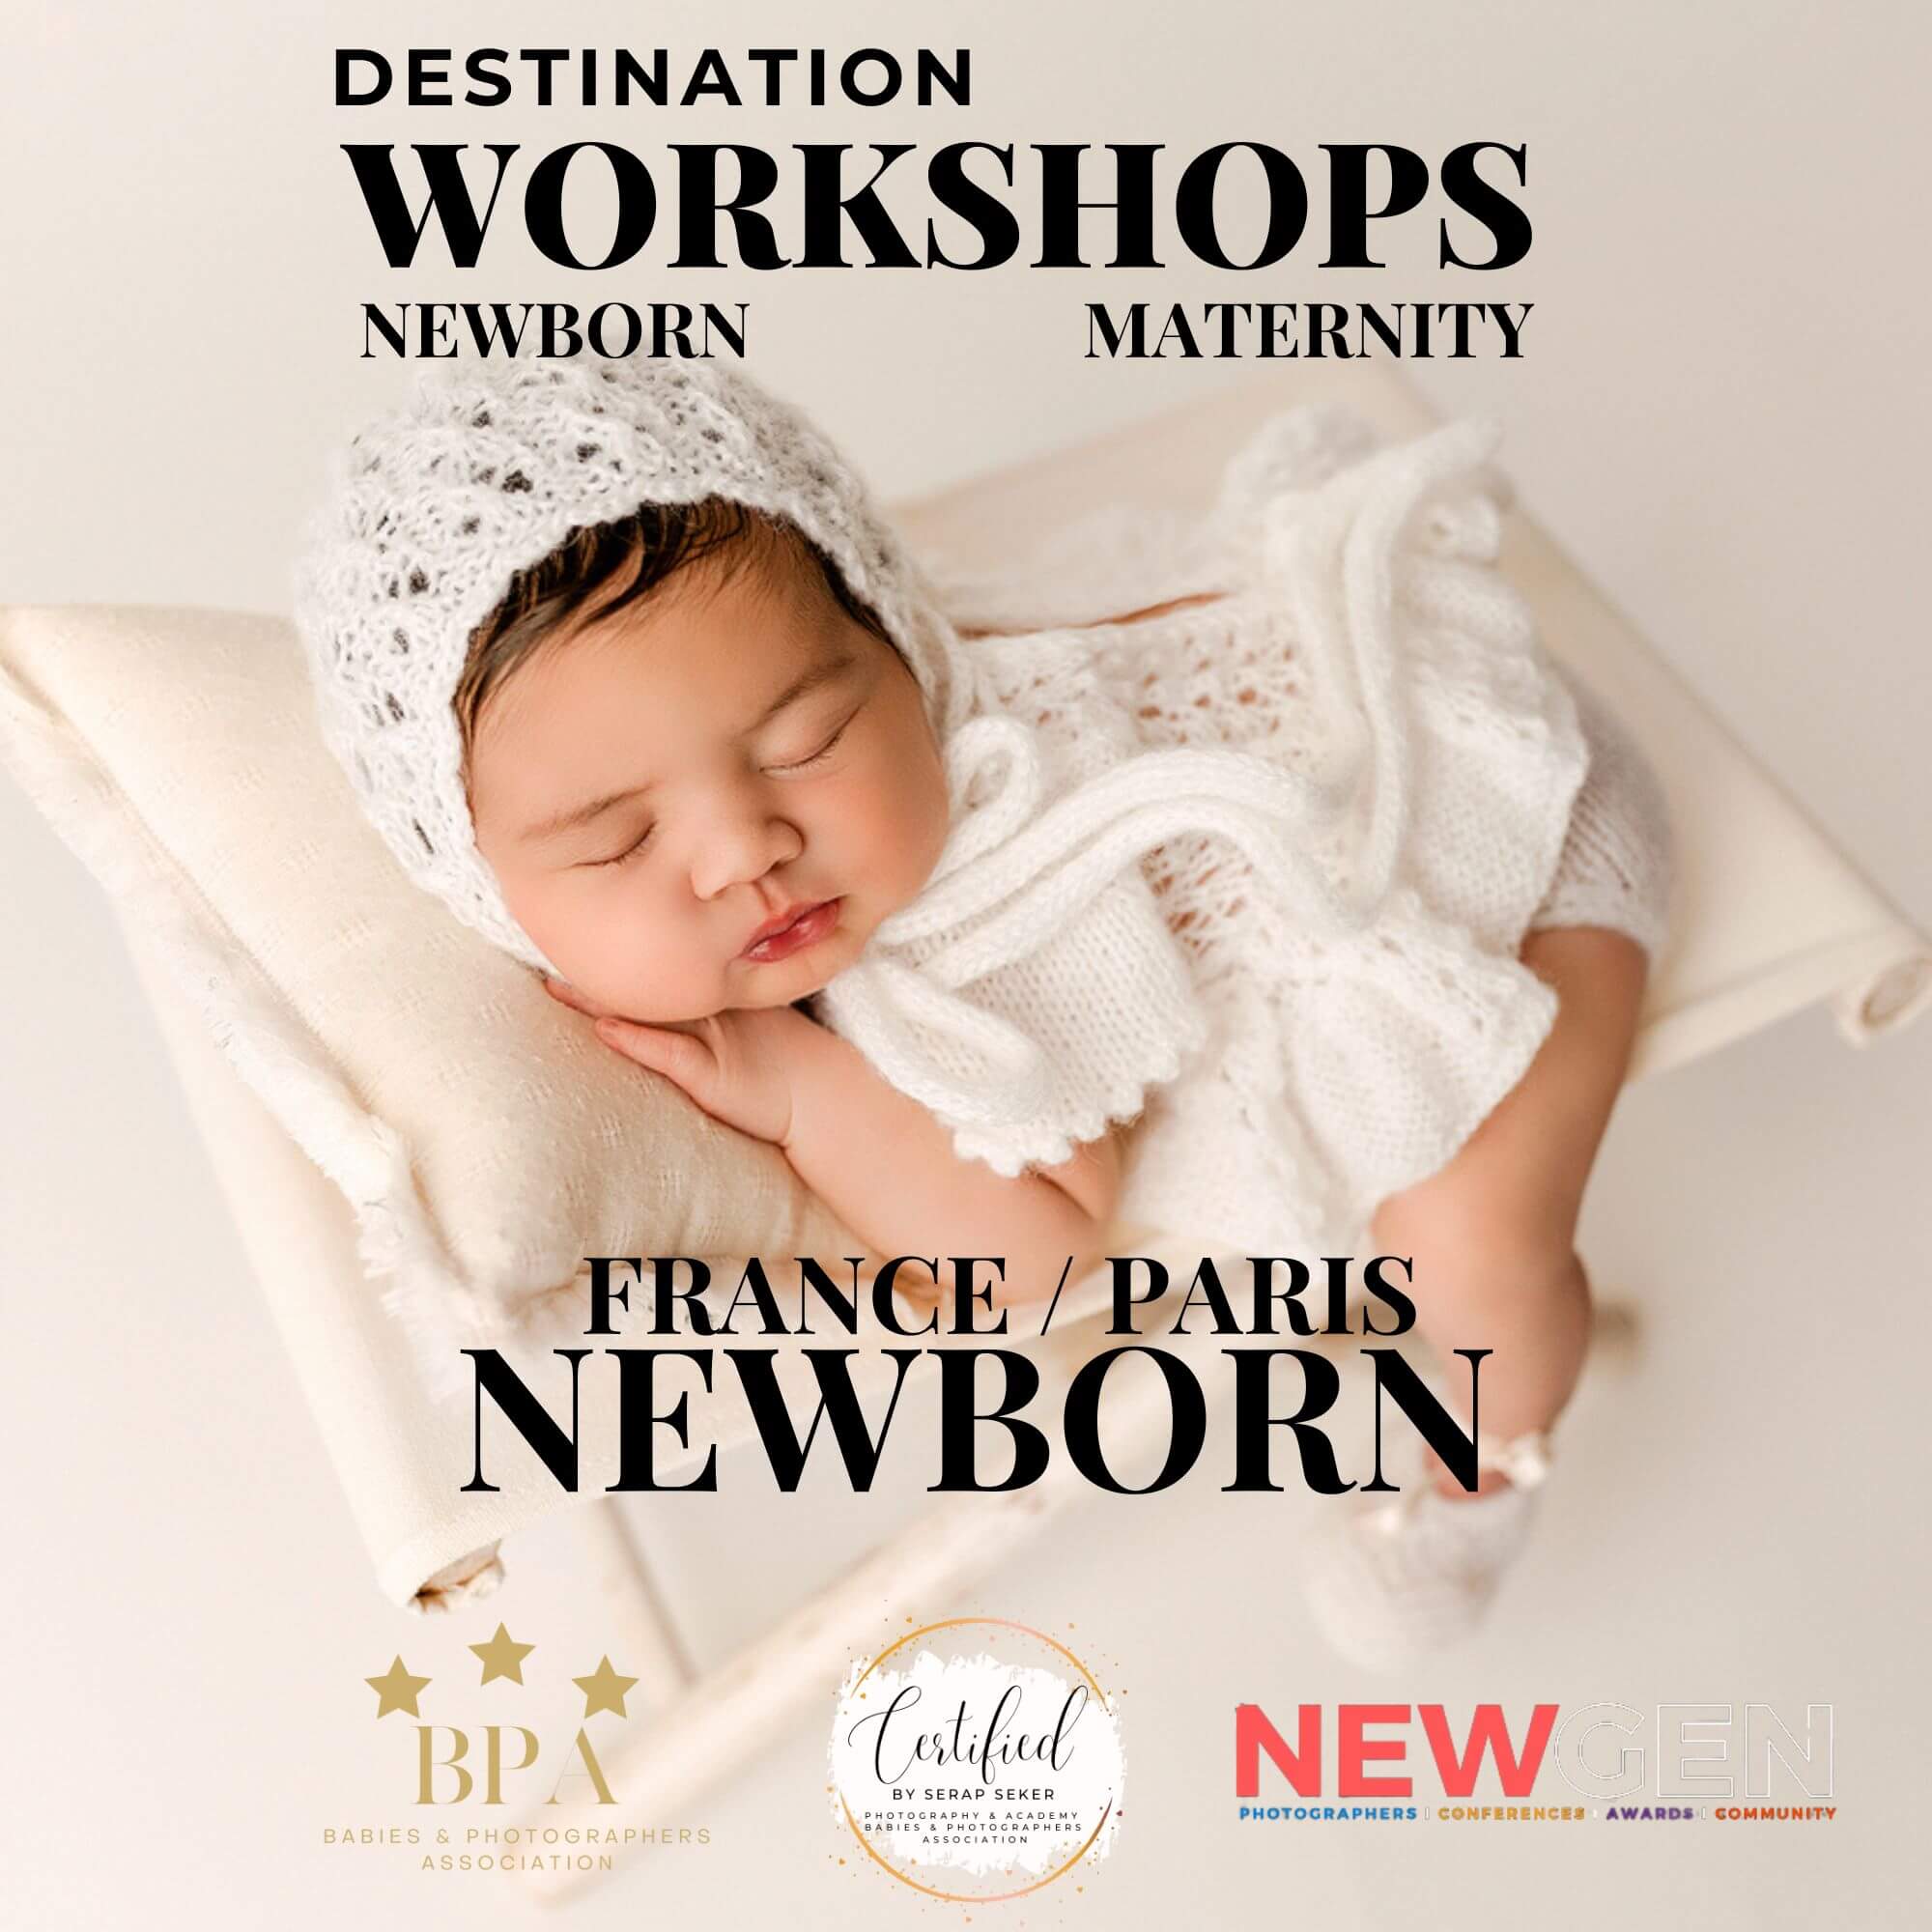 France/Paris Workshop